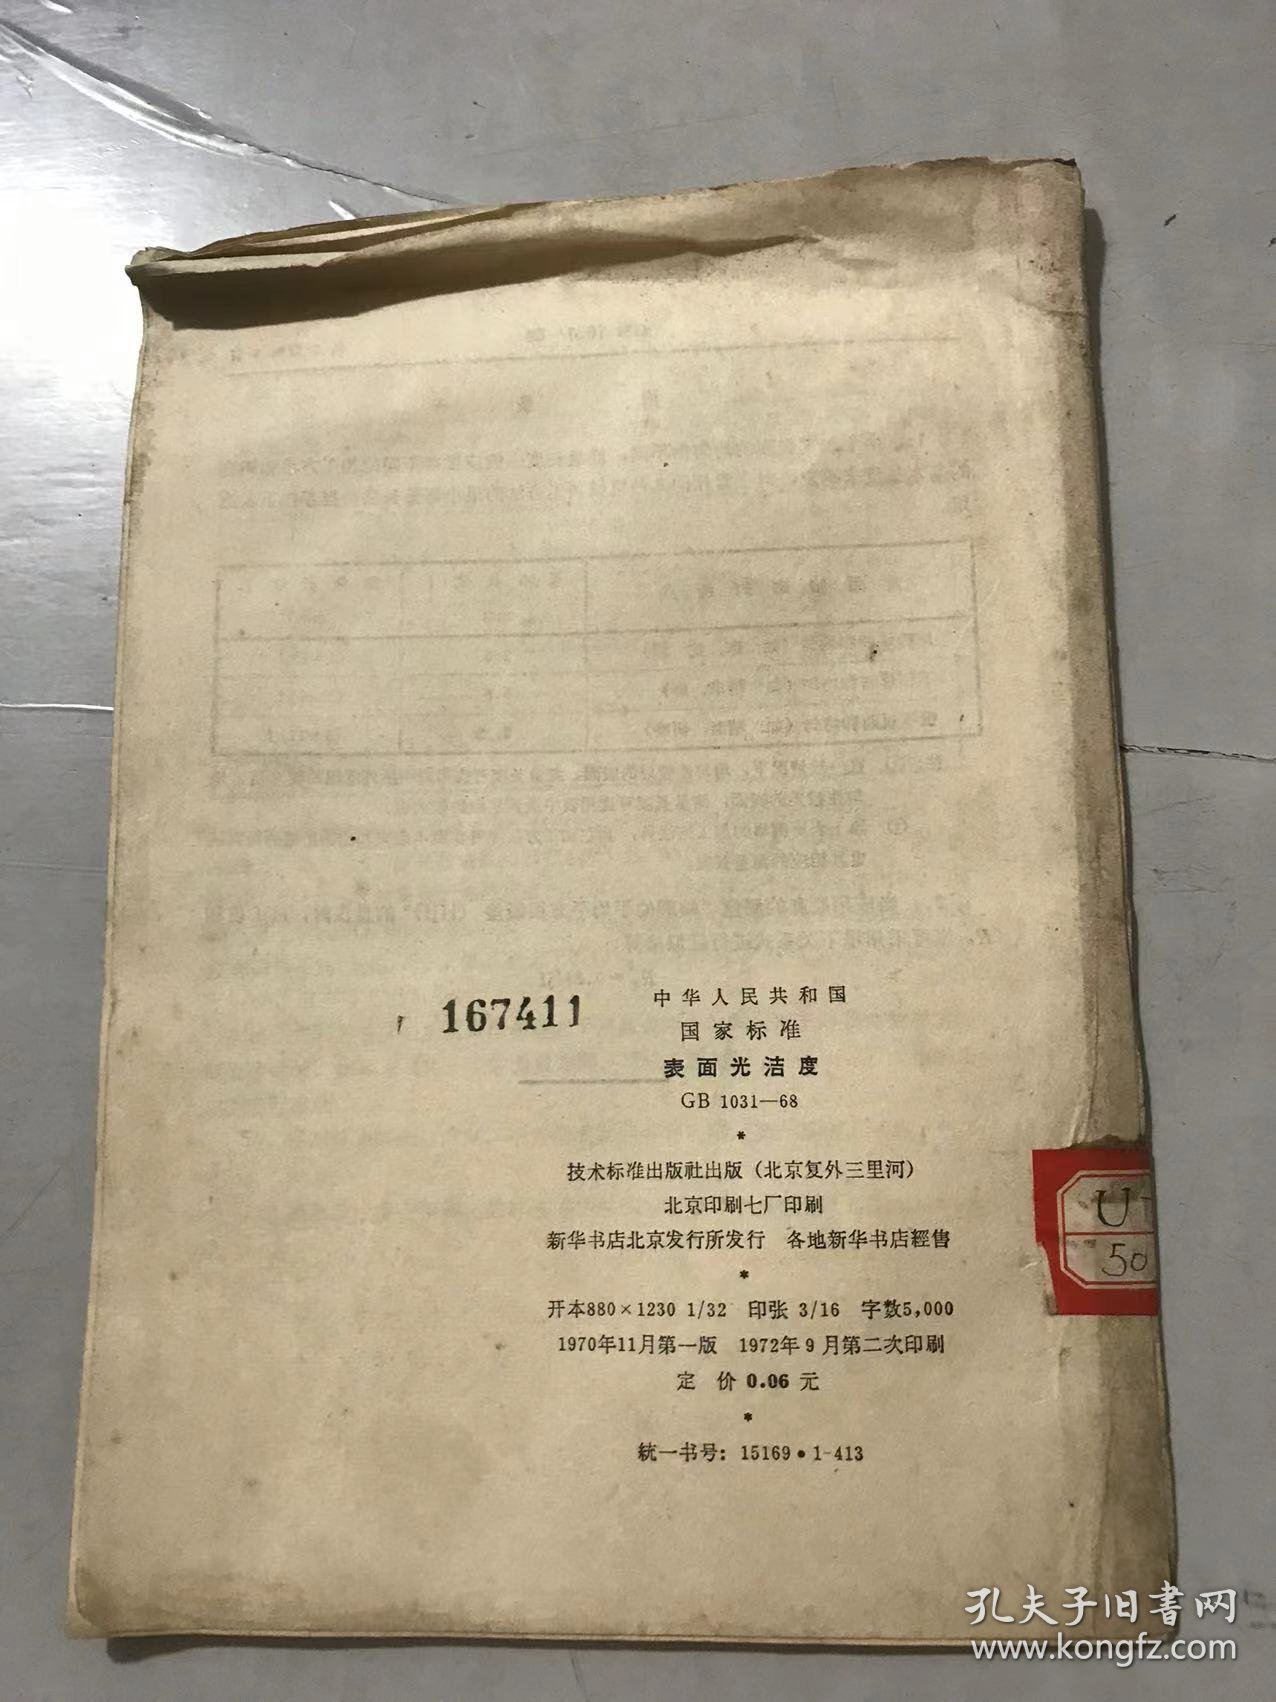 中华人民共和国国家标准《表面光洁度 GB 1031-68》。